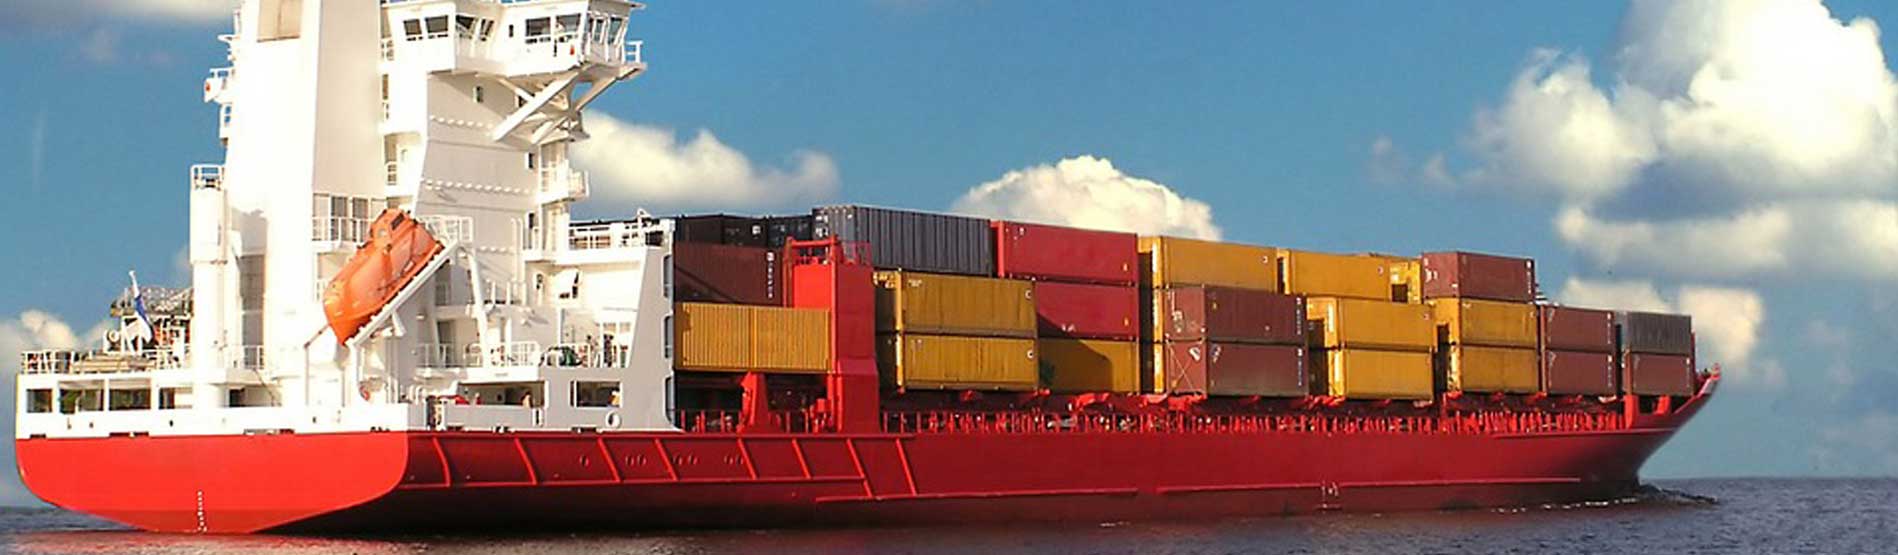 a red cargo ship